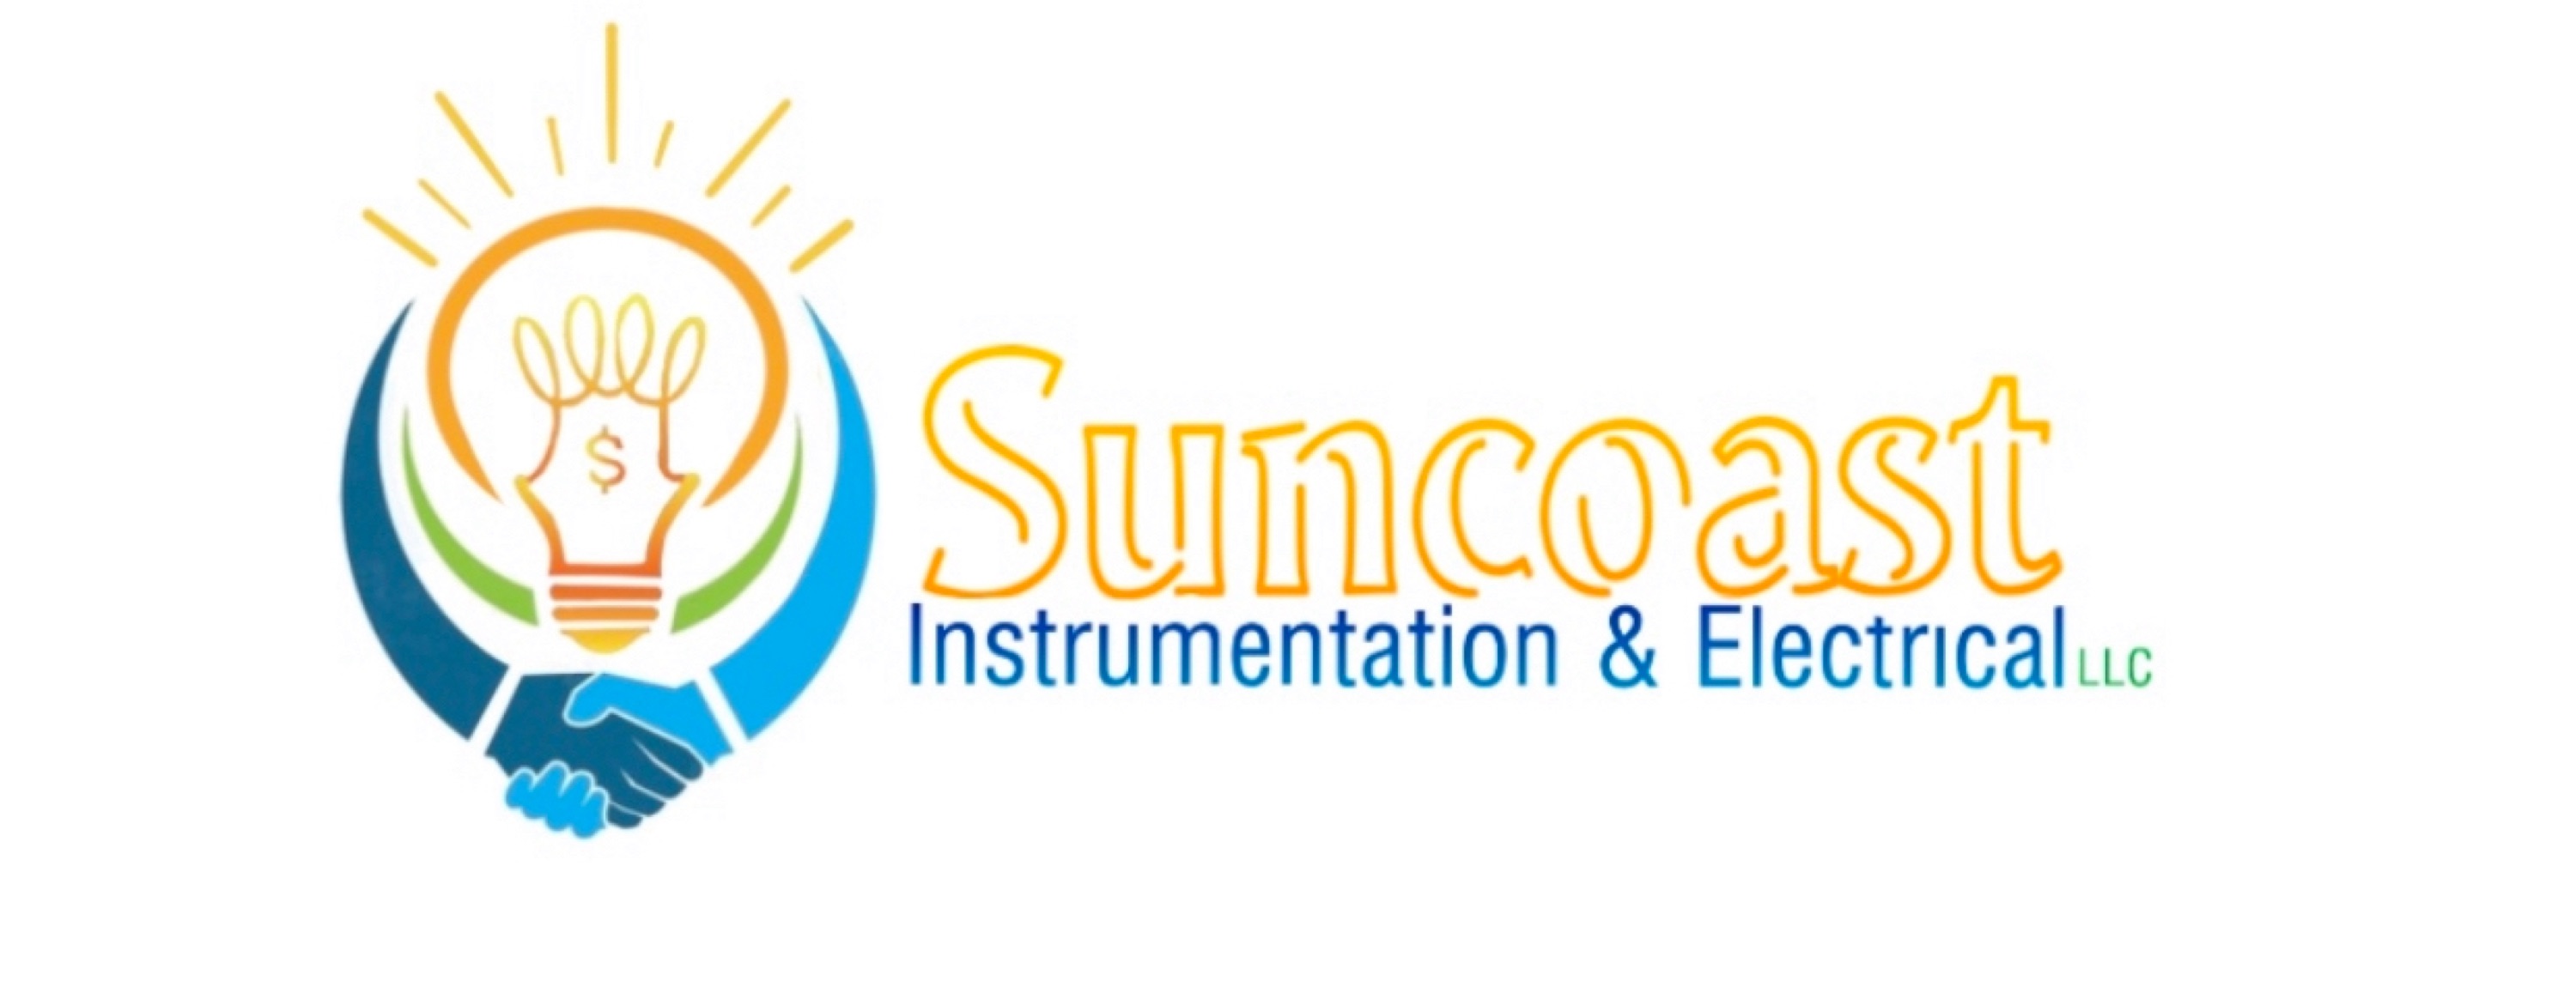 Suncoast Instrumentation & Electrical LLC Logo